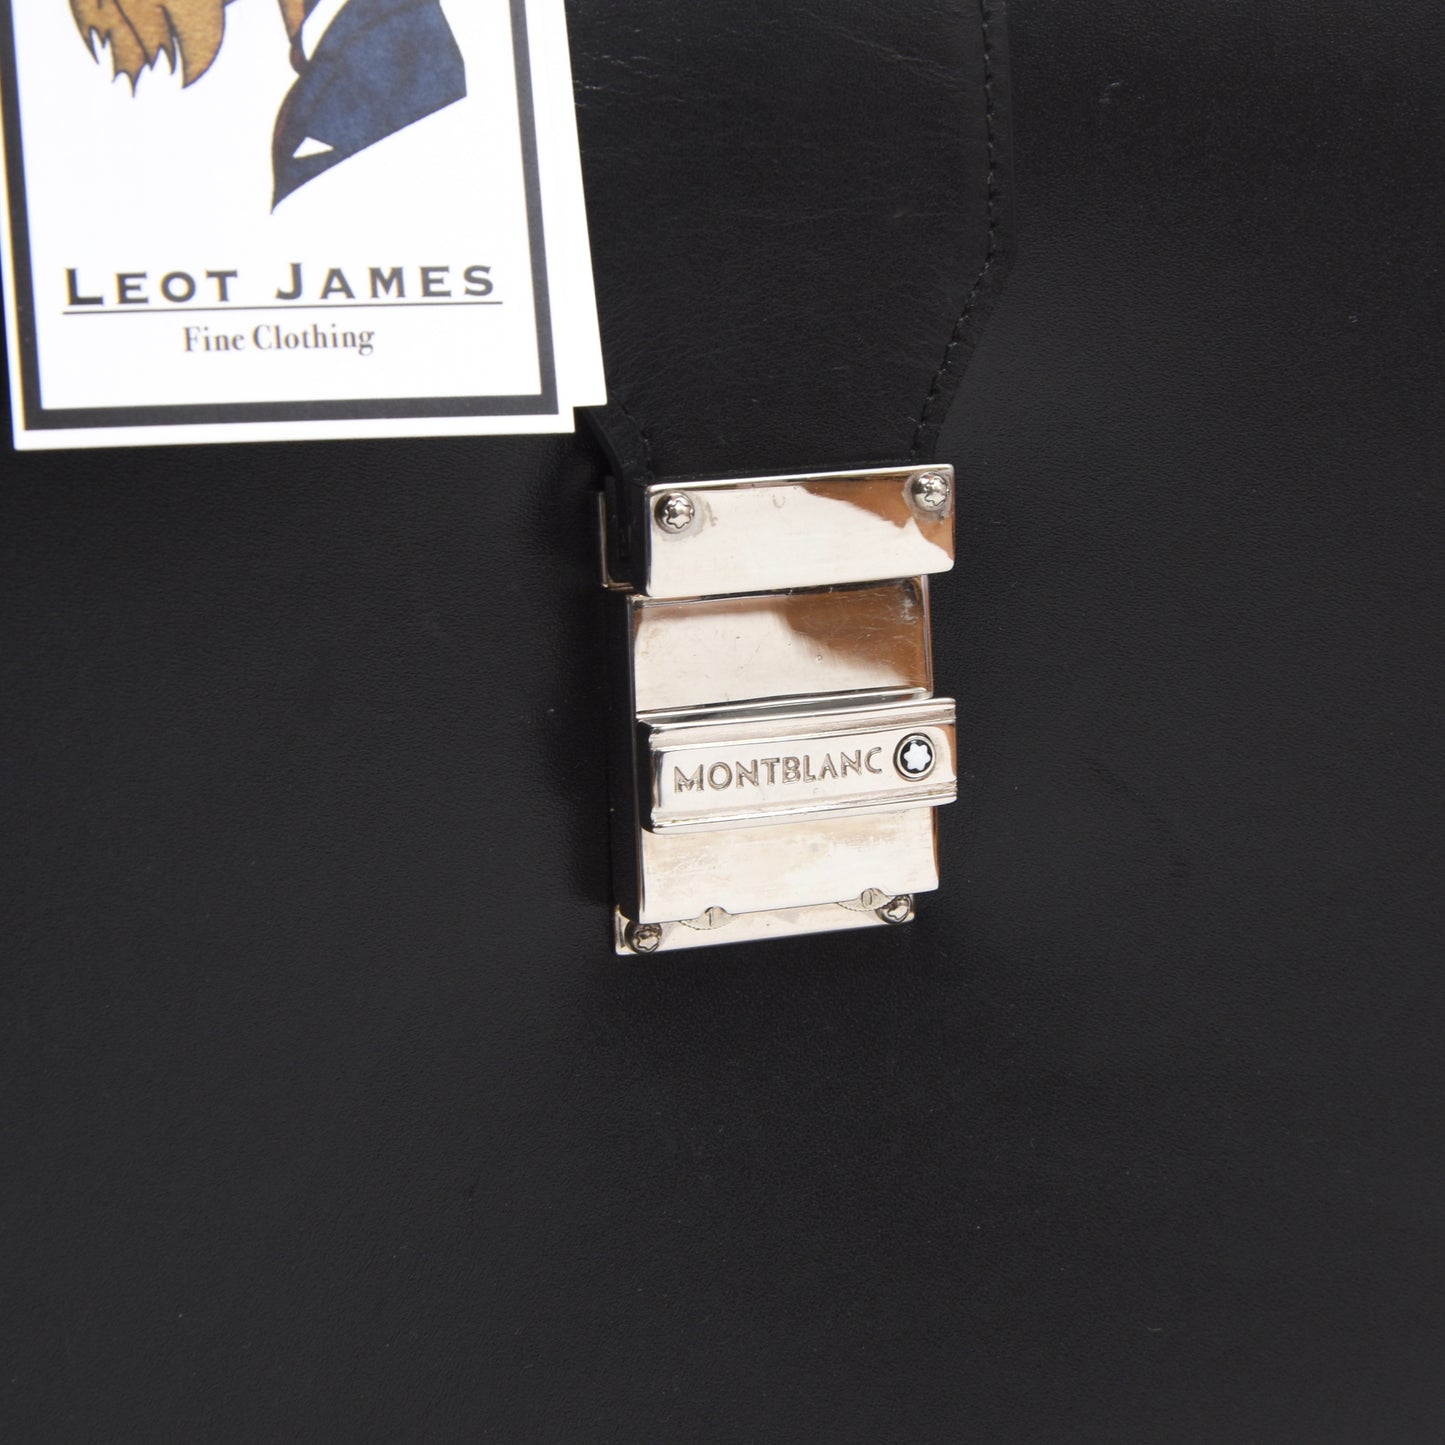 Montblanc Meisterstück Leather Briefcase - Black